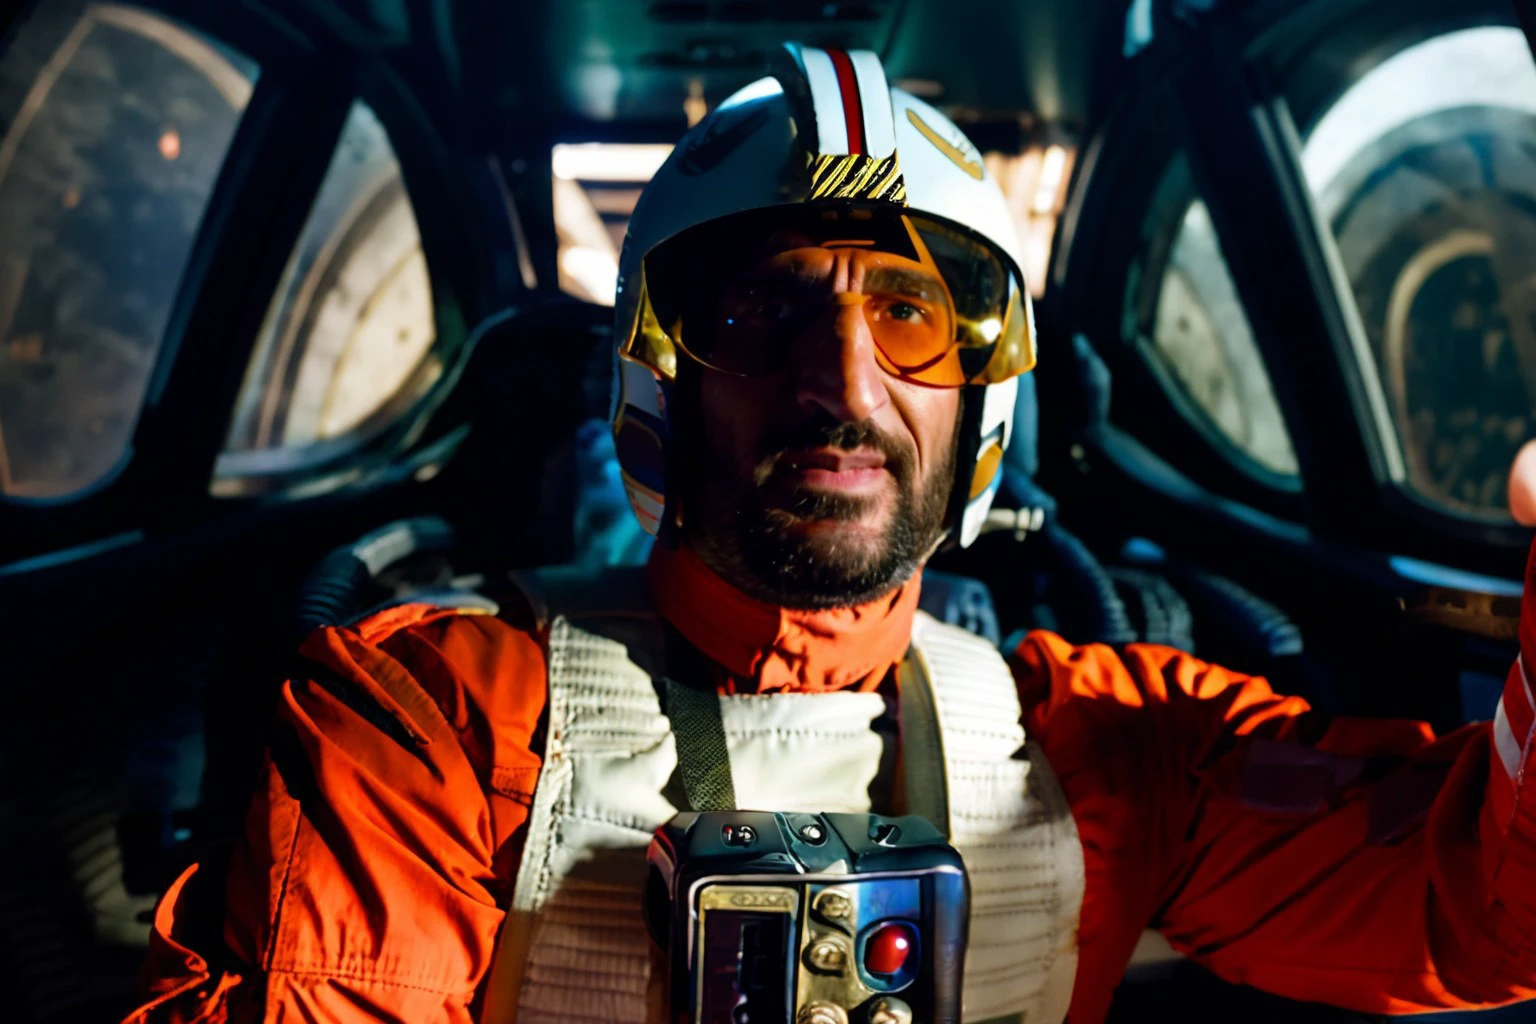 Fares Fares homem com capacete e traje de piloto rebelde tirando uma selfie, dentro de um cockpit com um grande painel largo (janelas ovais curvas:1.2) mostrando o espaço escuro, estrelas brilhantes 4k uhd, DSLR, luz suave, alta qualidade, Fujifilm XT3  